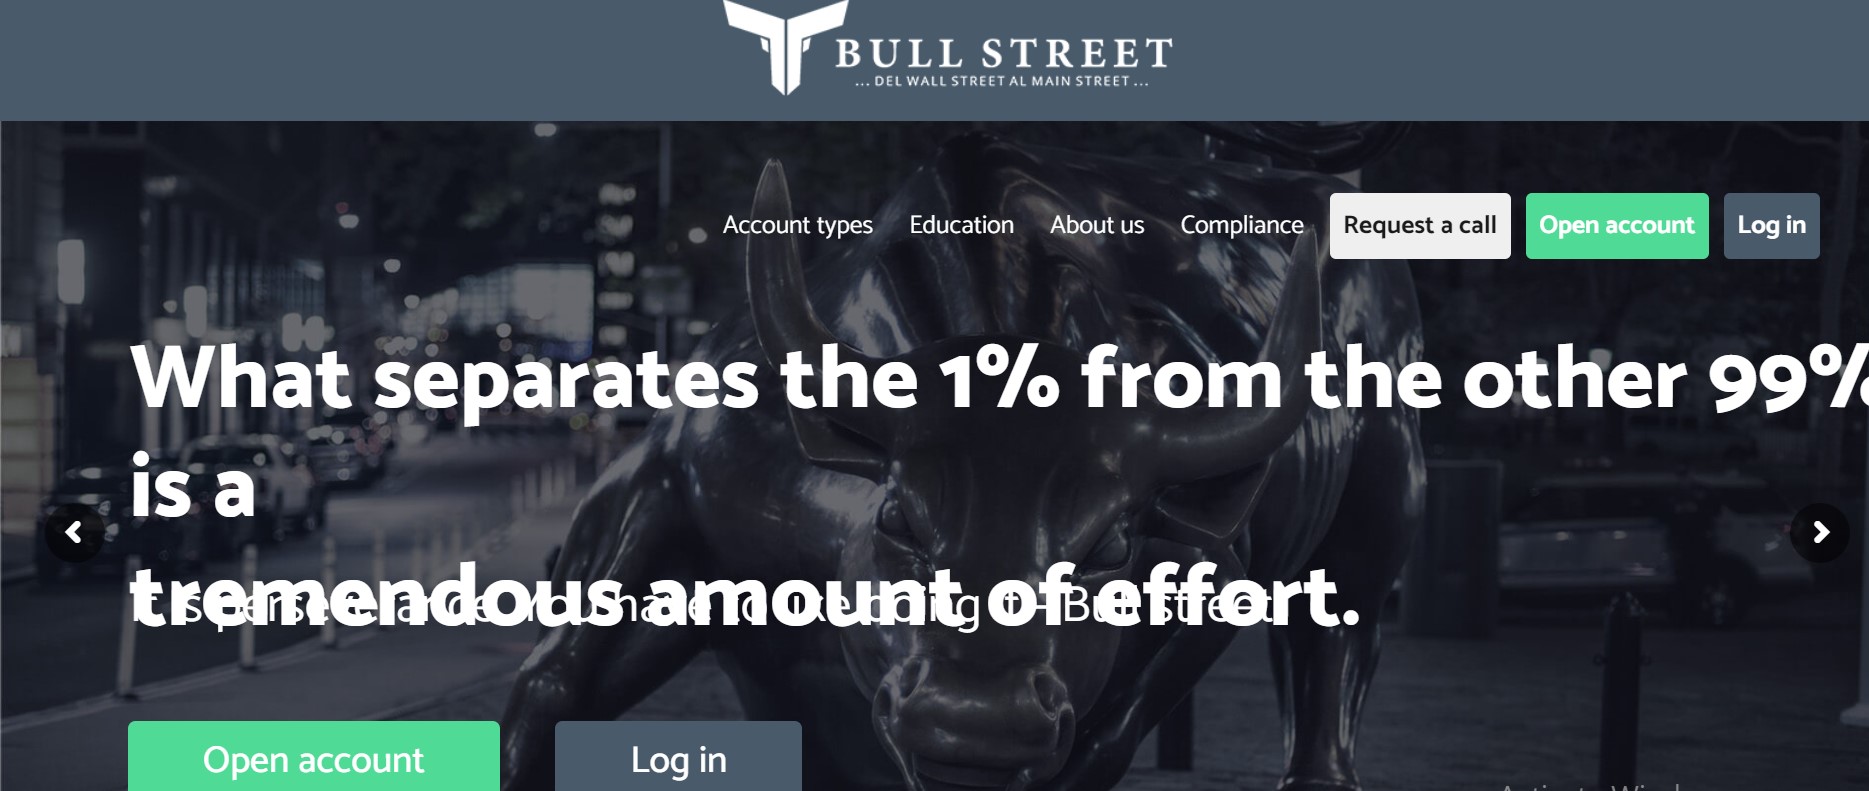 BullstreetFX website